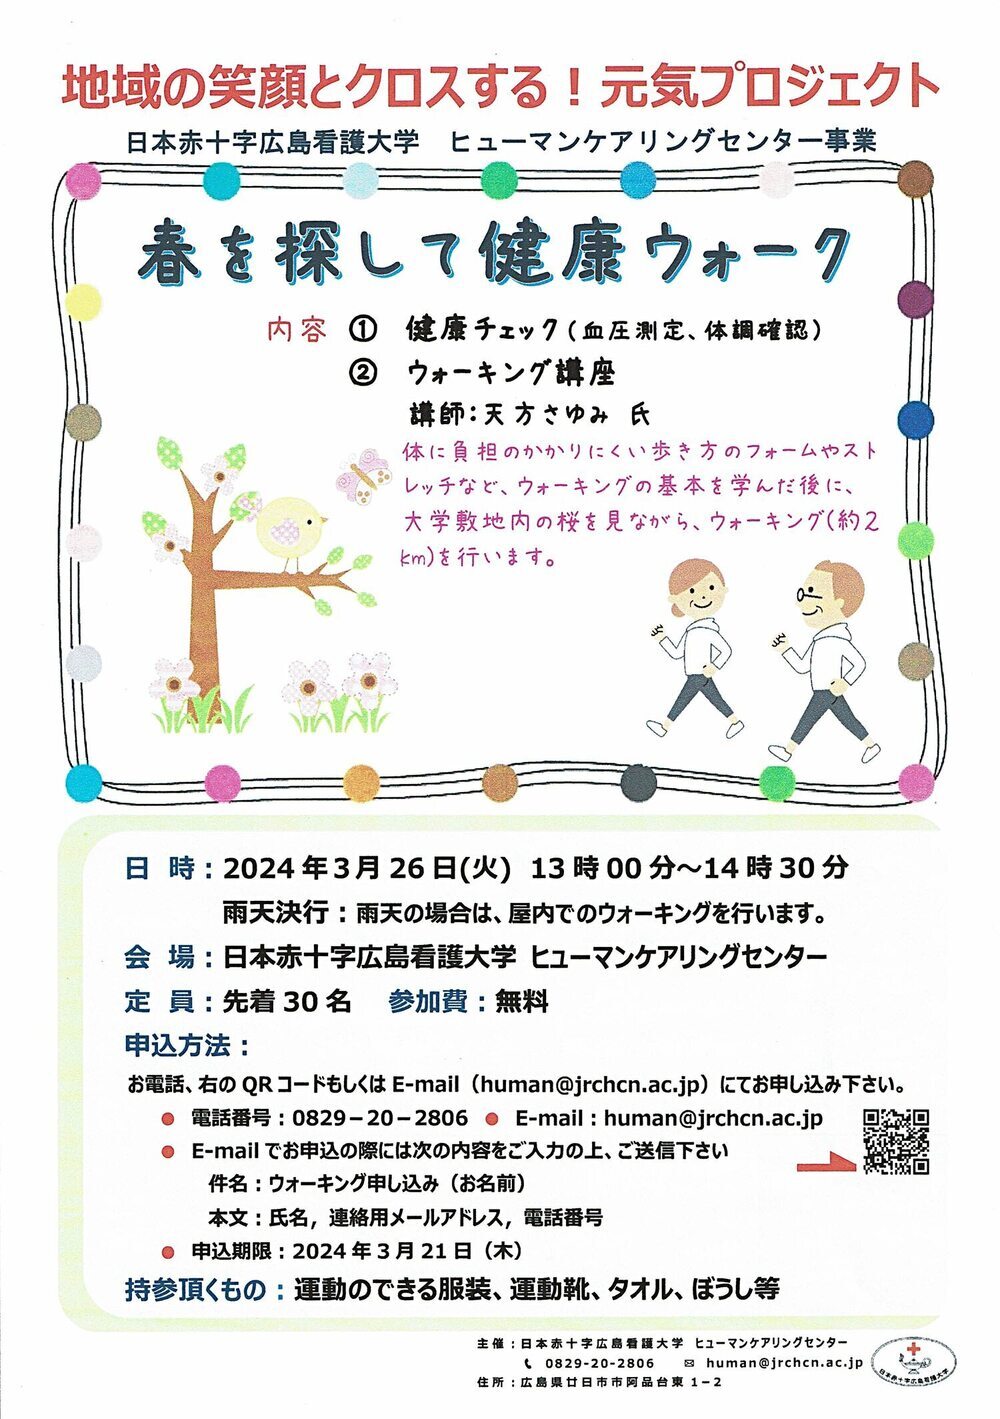 Caminhada pela Saúde em Busca da Primavera 3 de março (terça-feira) Gratuita para as primeiras 26 pessoas JRCS Hiroshima College of Nursing